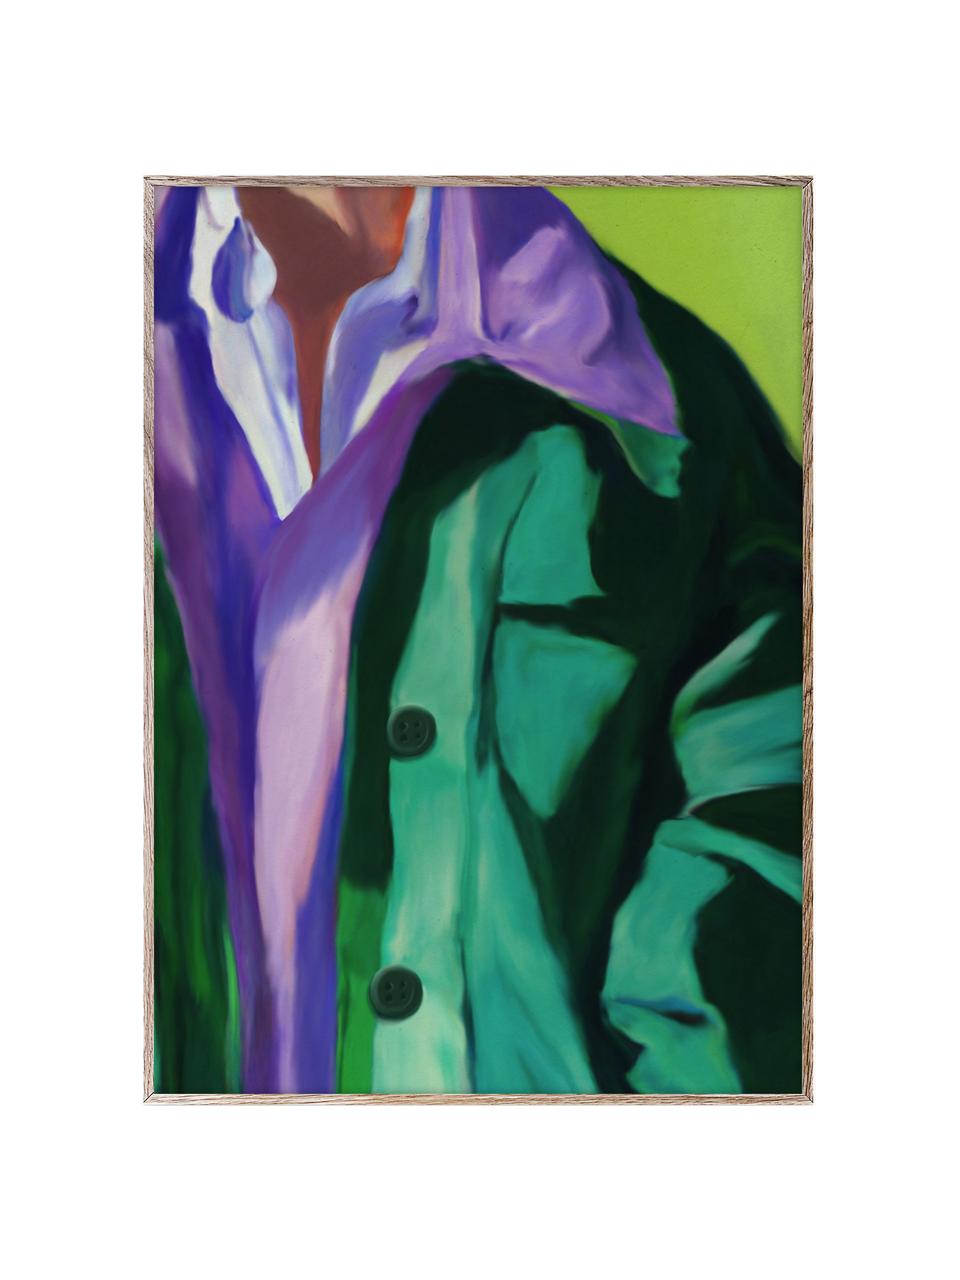 Plagát Spring Jacket, 210 g matný papier, digitálna tlač s 10 farbami odolnými voči UV žiareniu, Fialová, tyrkysovozelená, Š 30 x V 40 cm